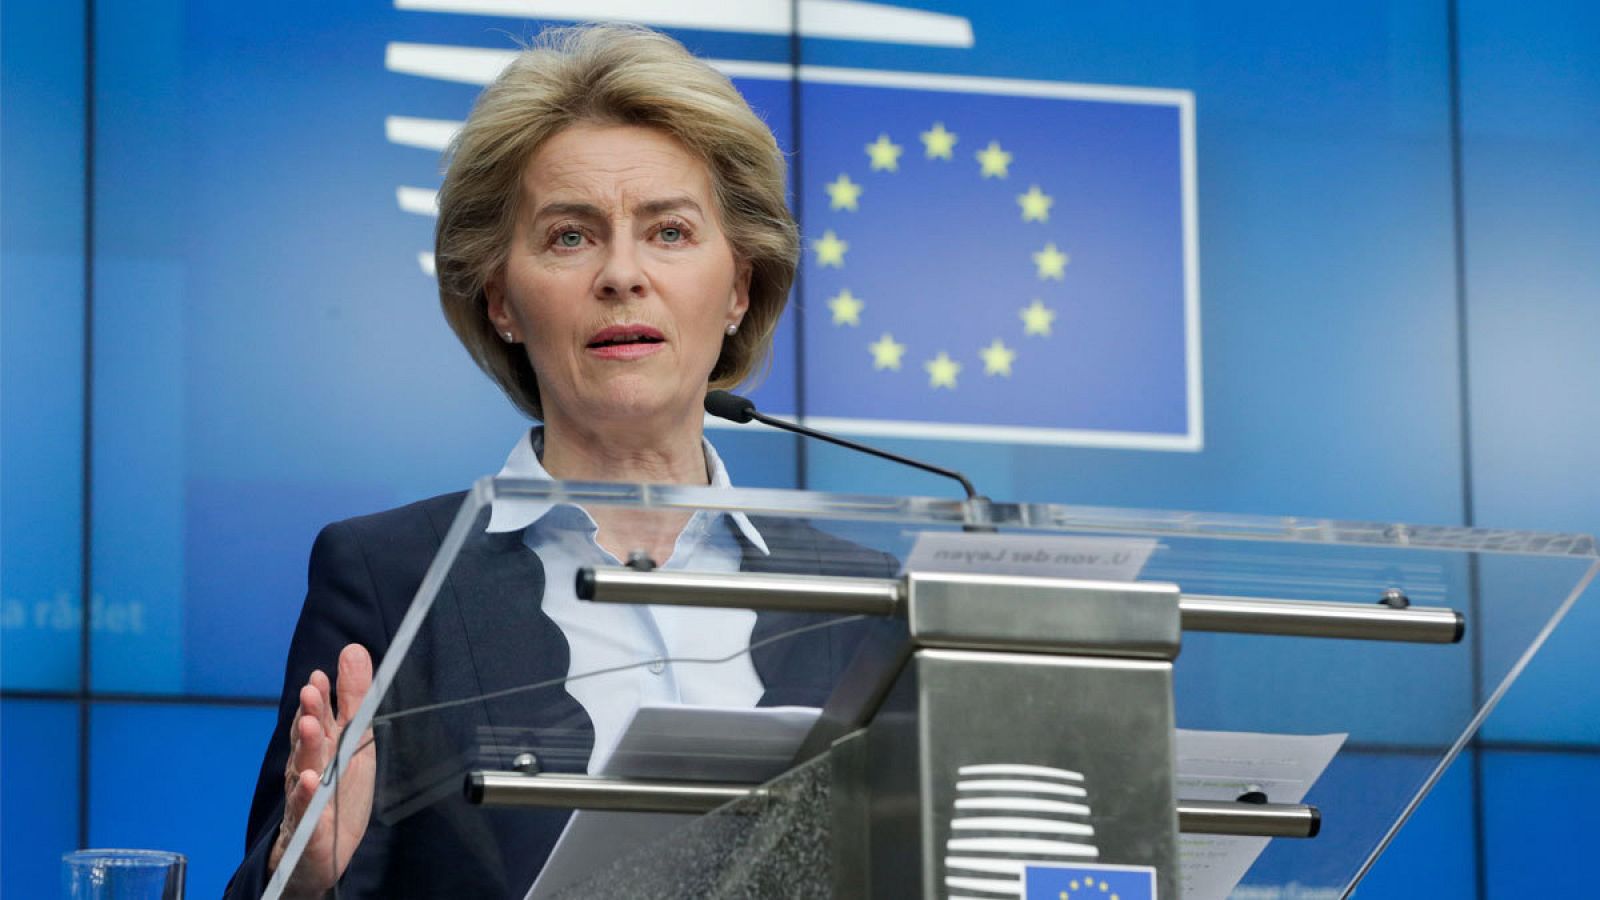  La presidenta de la Comisión Europea, Ursula von der Leyen